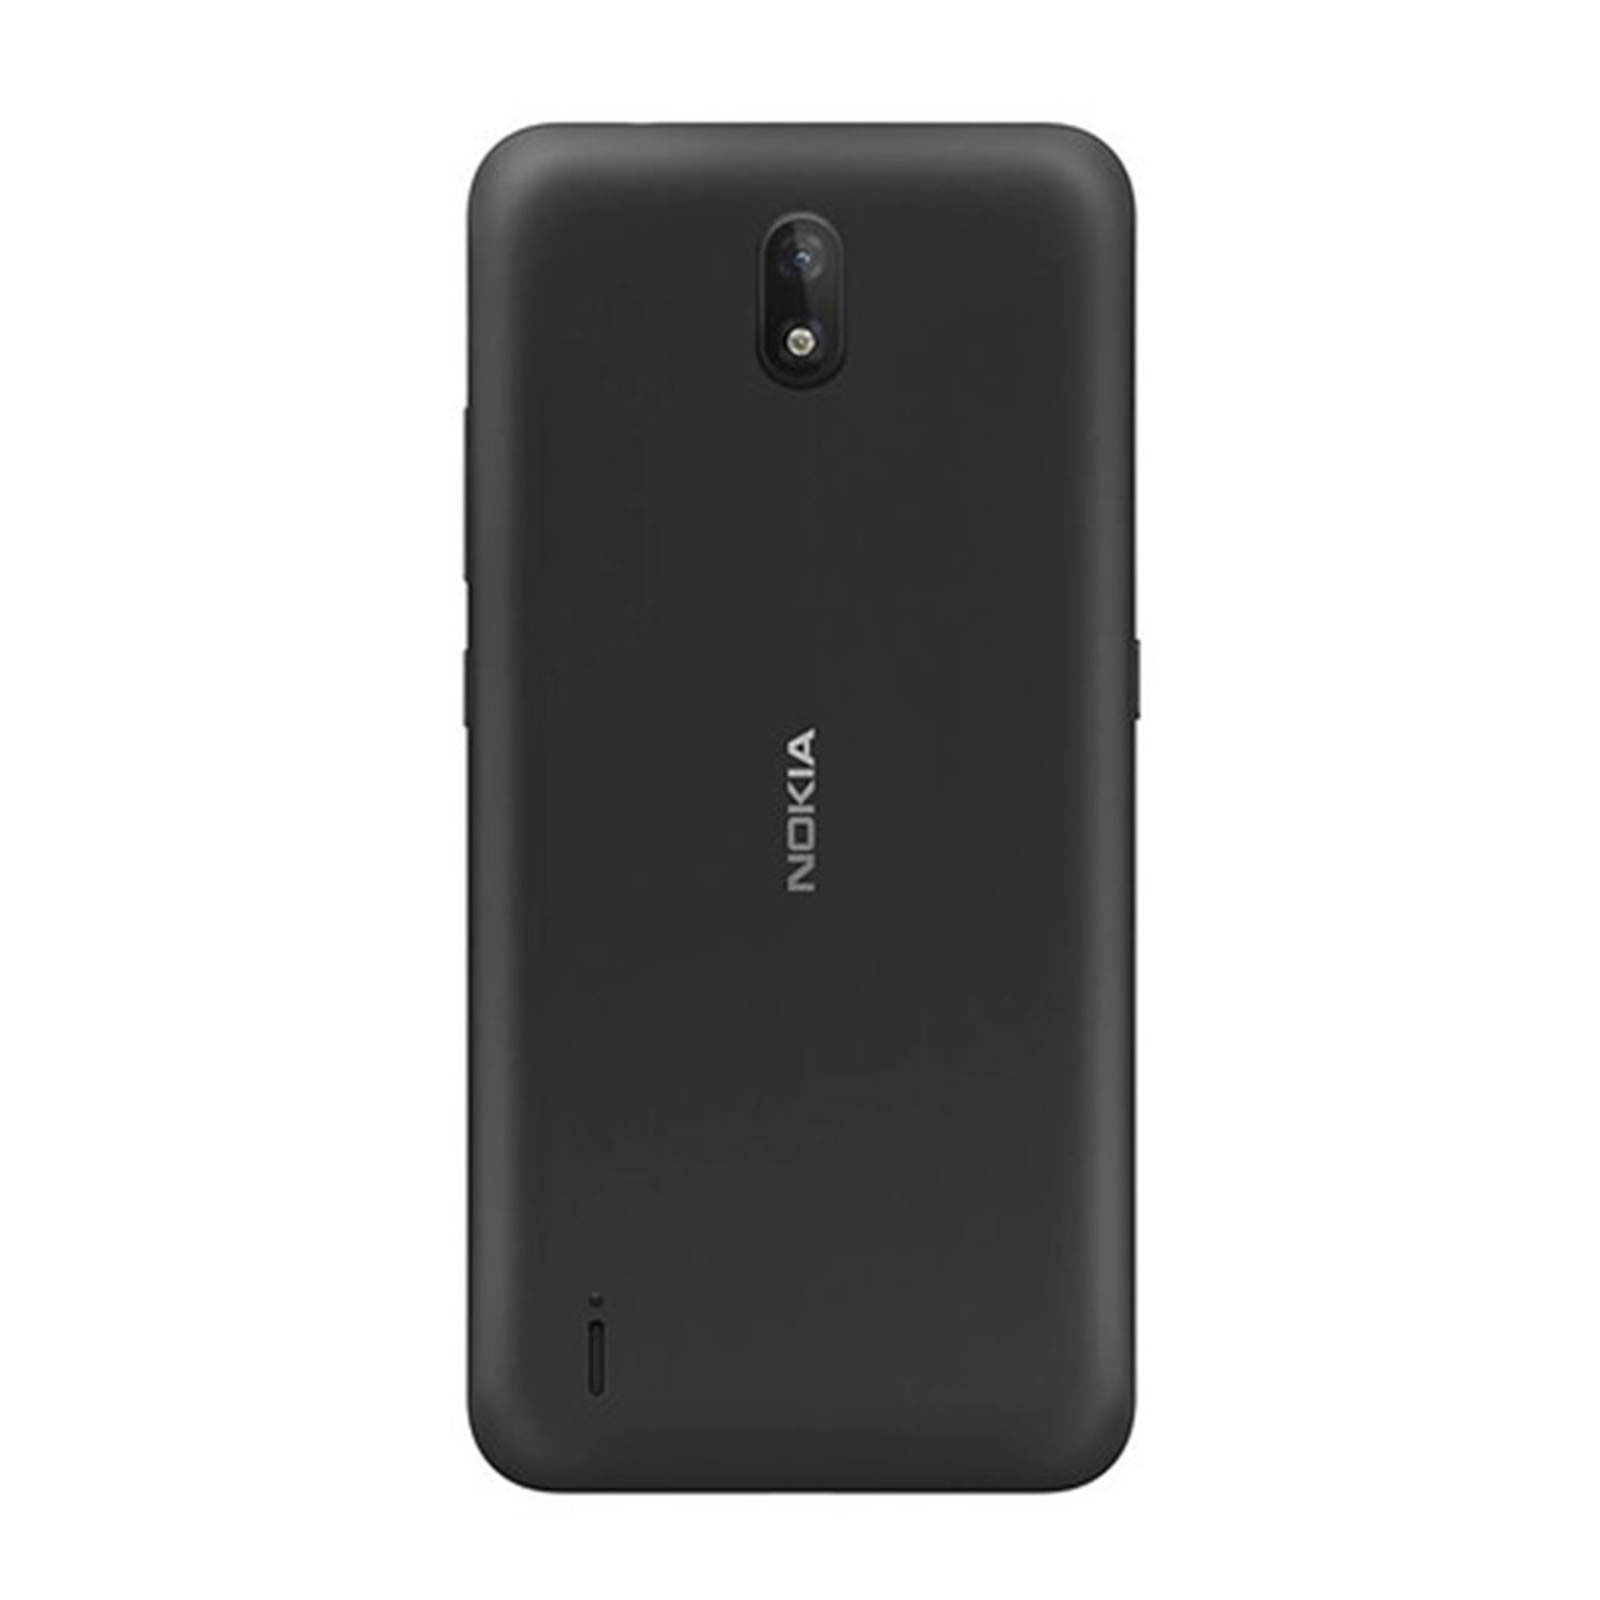 فروش نقدی و اقساطی گوشی موبایل نوکیا مدل Nokia C2 TA-1204 DS دو سیم کارت ظرفیت 16 گیگابایت